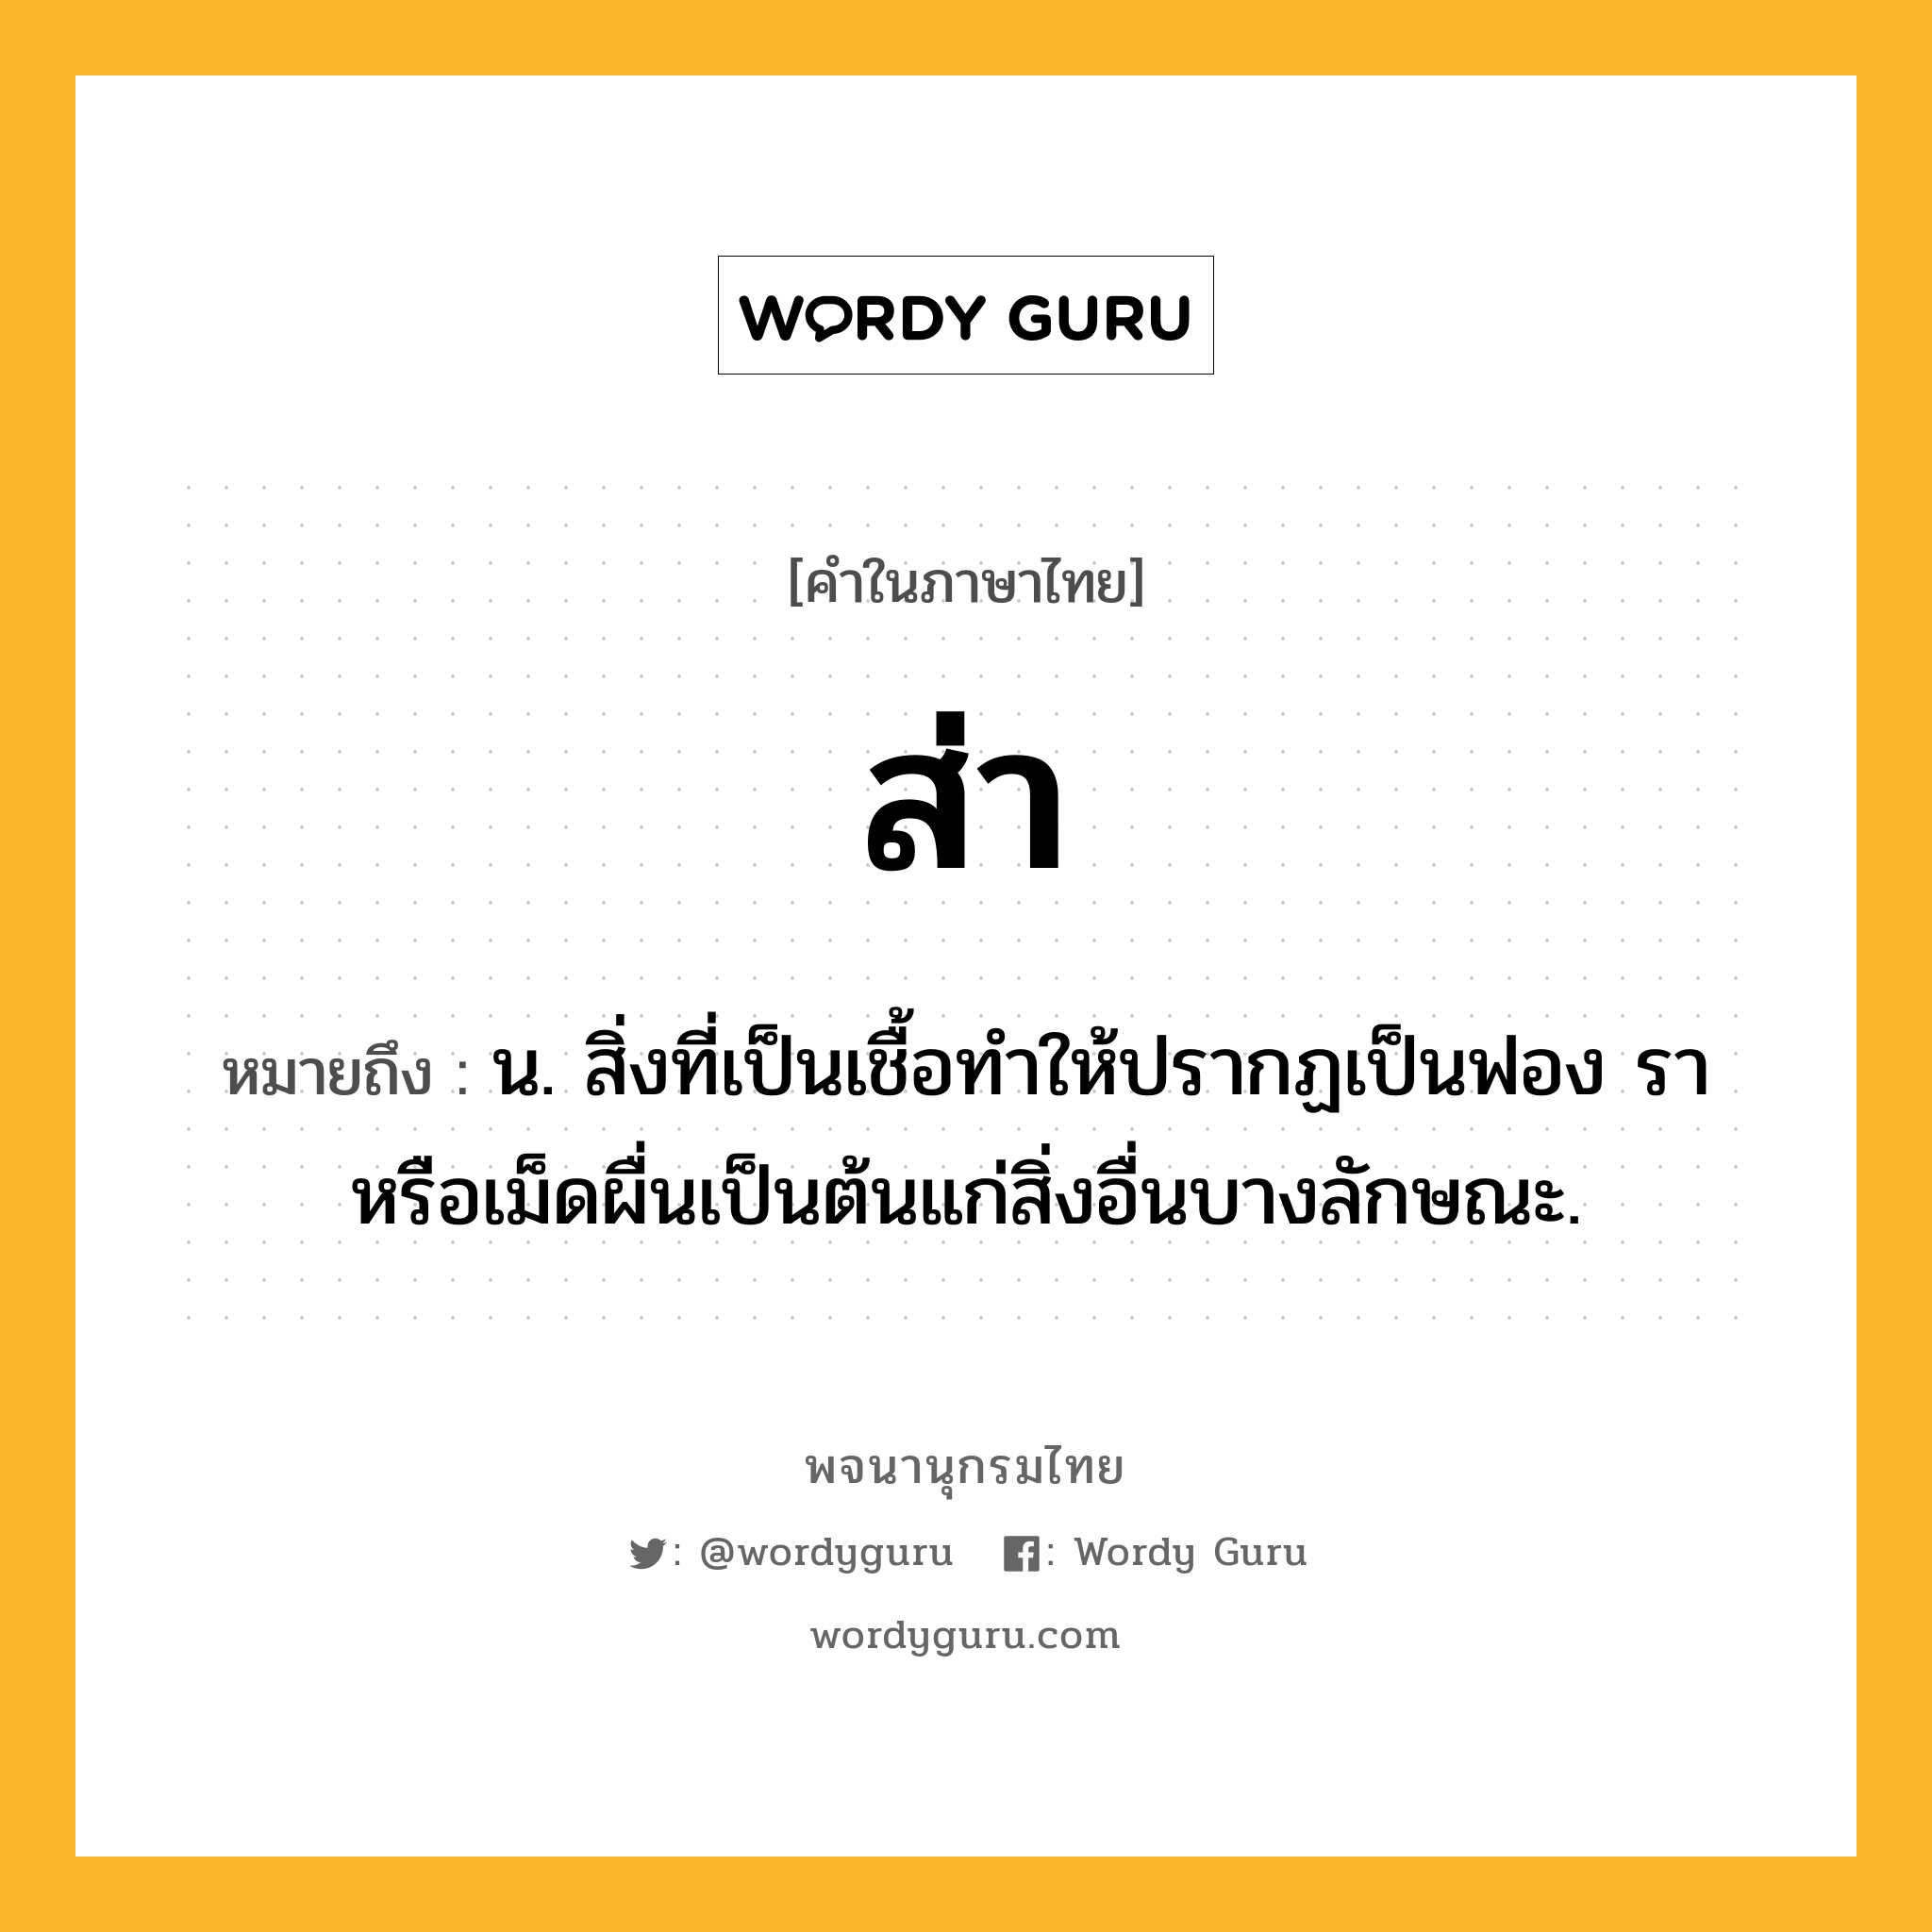 ส่า ความหมาย หมายถึงอะไร?, คำในภาษาไทย ส่า หมายถึง น. สิ่งที่เป็นเชื้อทําให้ปรากฏเป็นฟอง รา หรือเม็ดผื่นเป็นต้นแก่สิ่งอื่นบางลักษณะ.